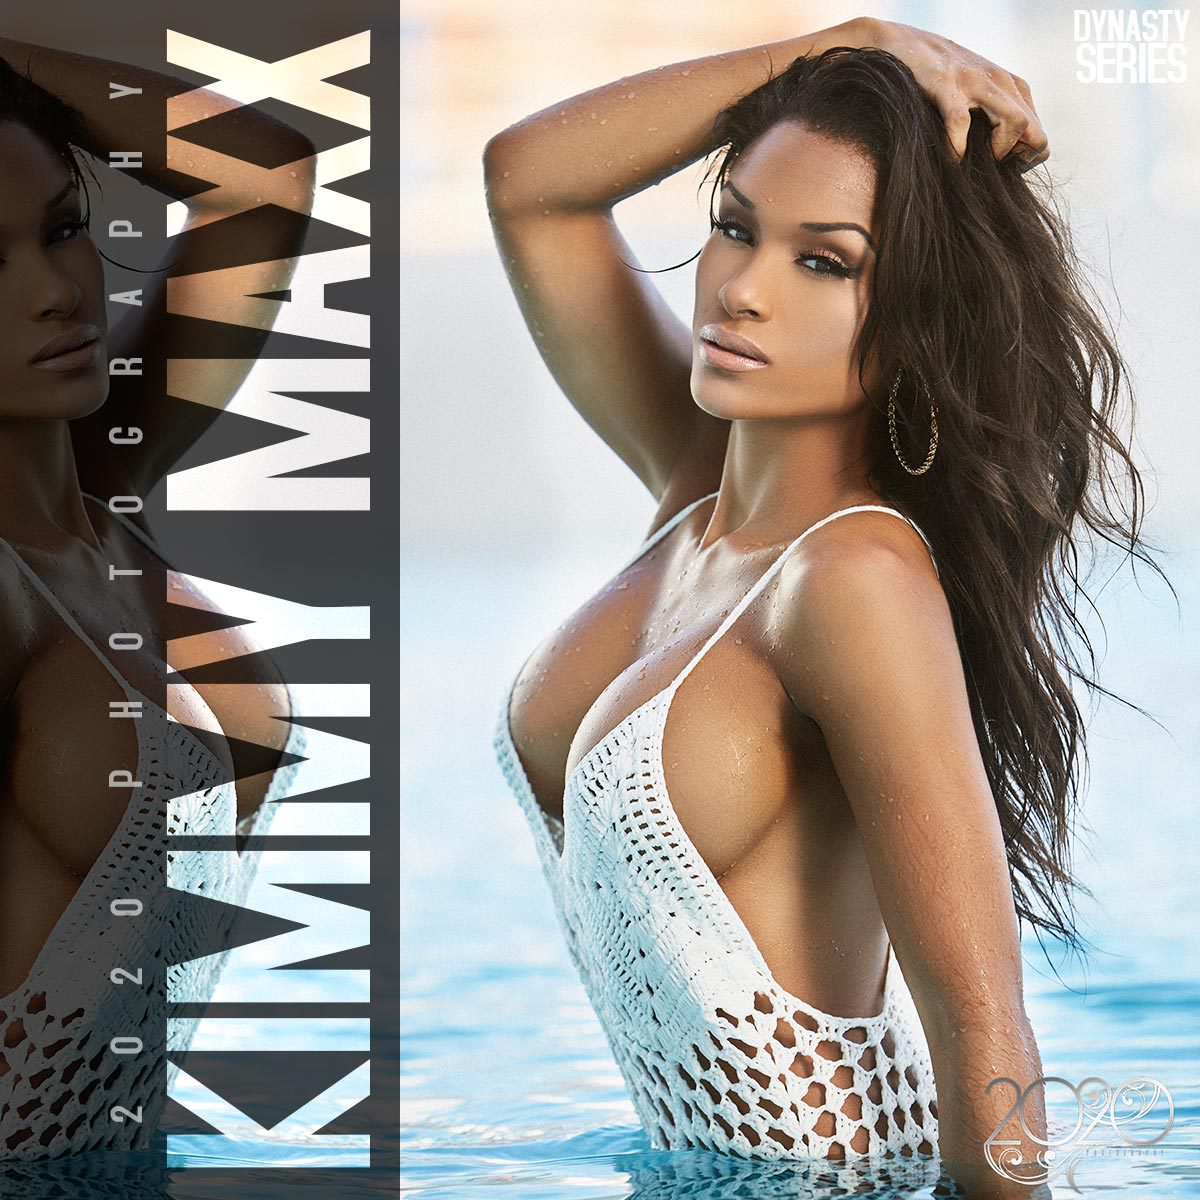 kimmy-maxx-2020-dynastyseries-05.jpg